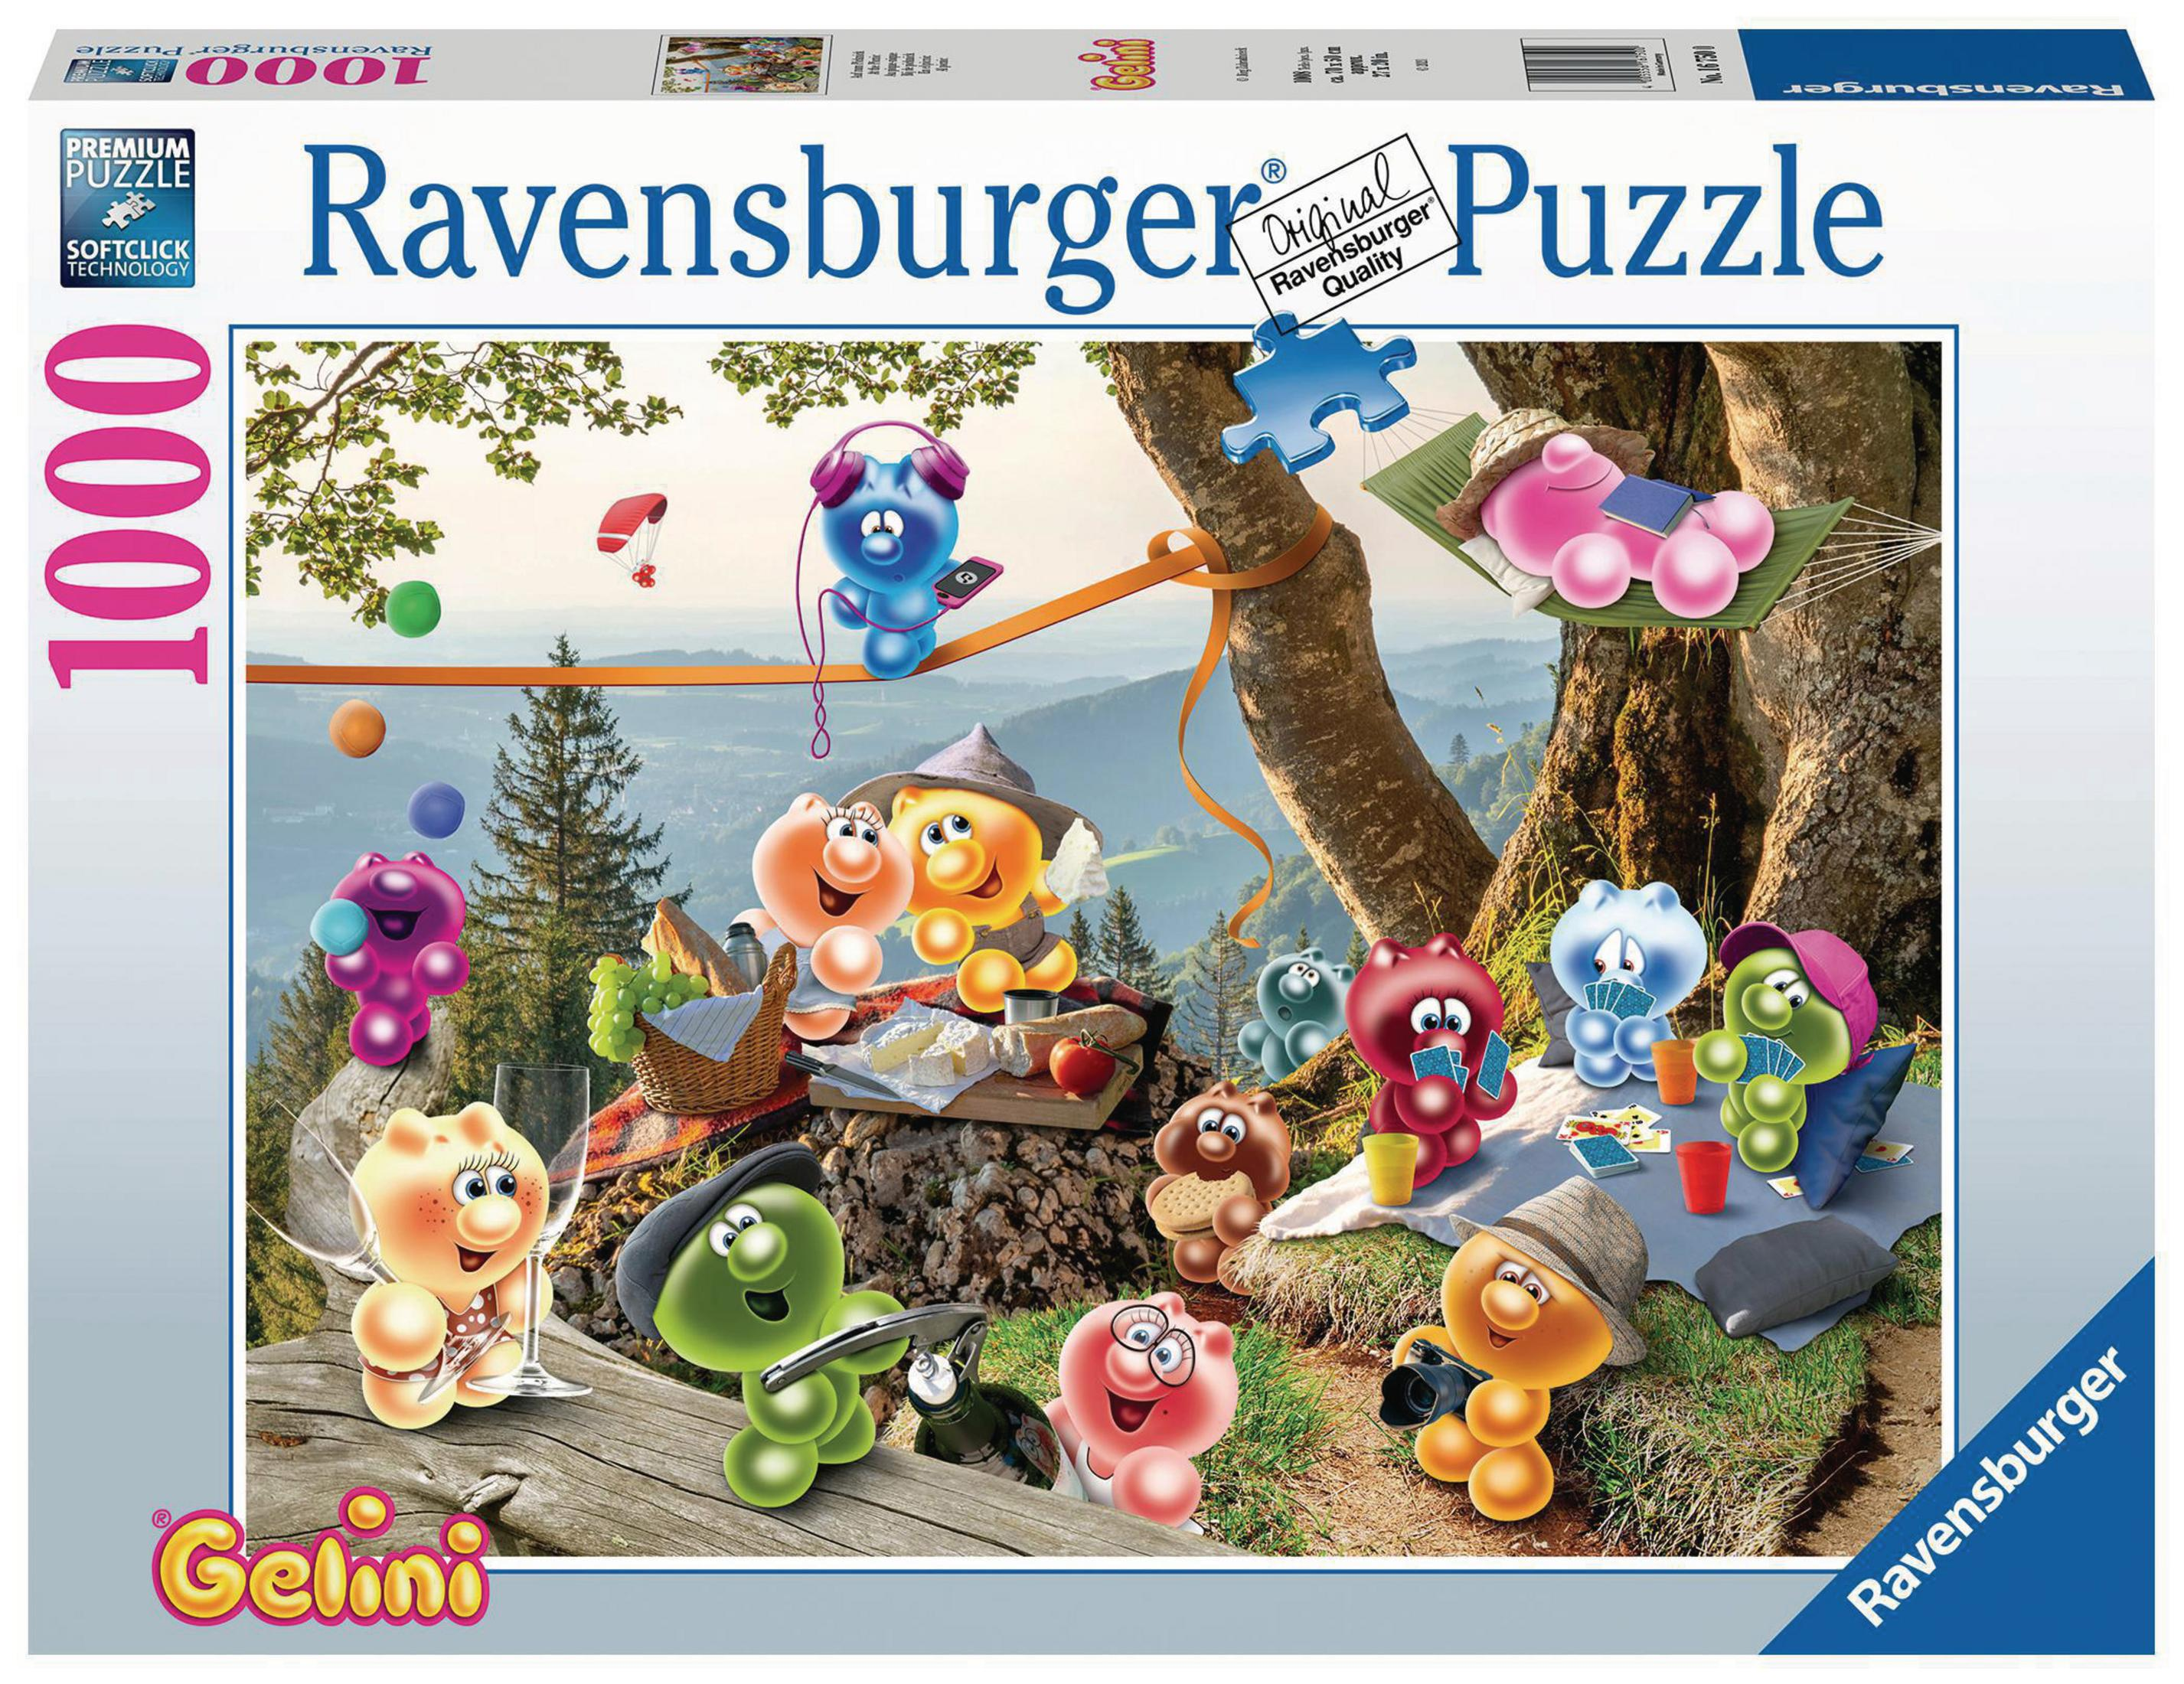 GELINI-AUF Puzzle RAVENSBURGER 16750 PICKNICK ZUM